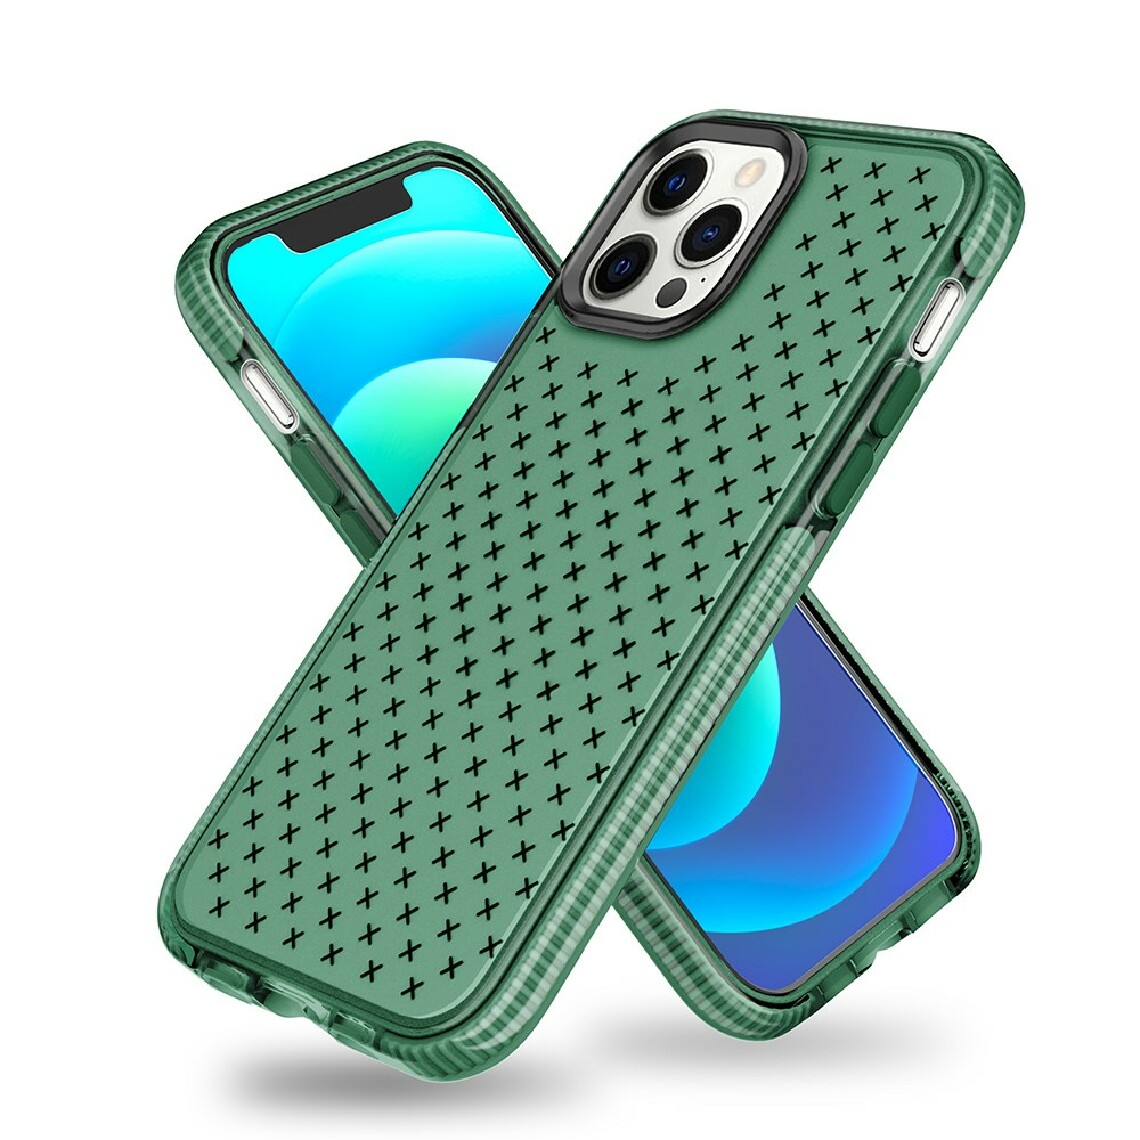 Other - Coque en TPU surface de motif de grille souple vert pour votre Apple iPhone 12 mini - Coque, étui smartphone